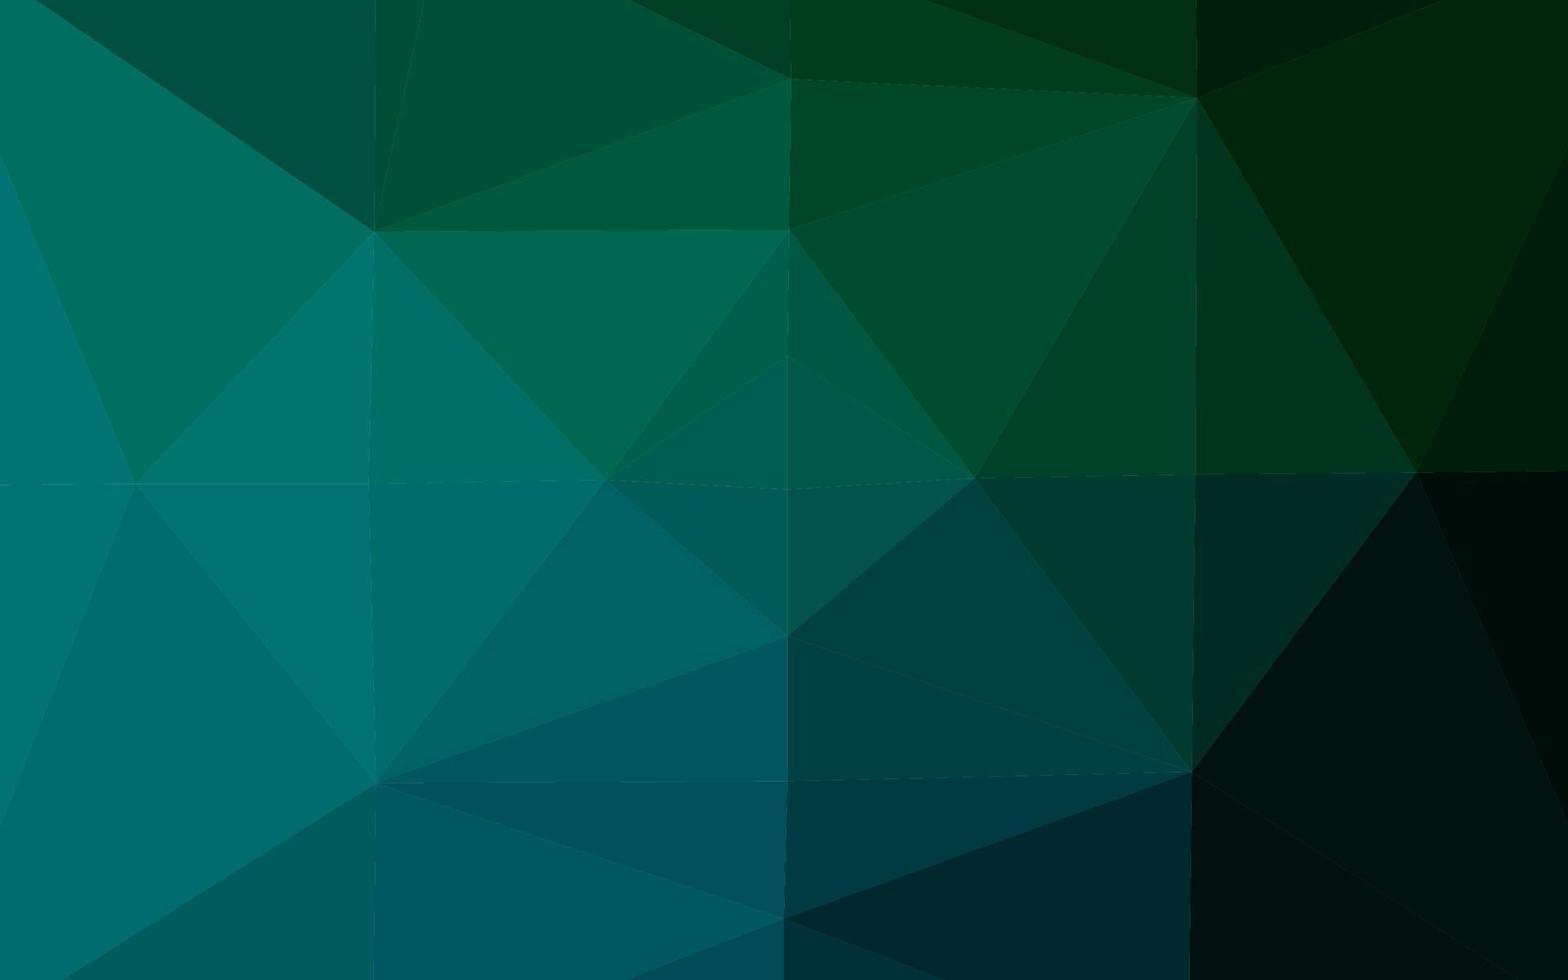 mörkblå, grön vektor lysande triangulär mall.